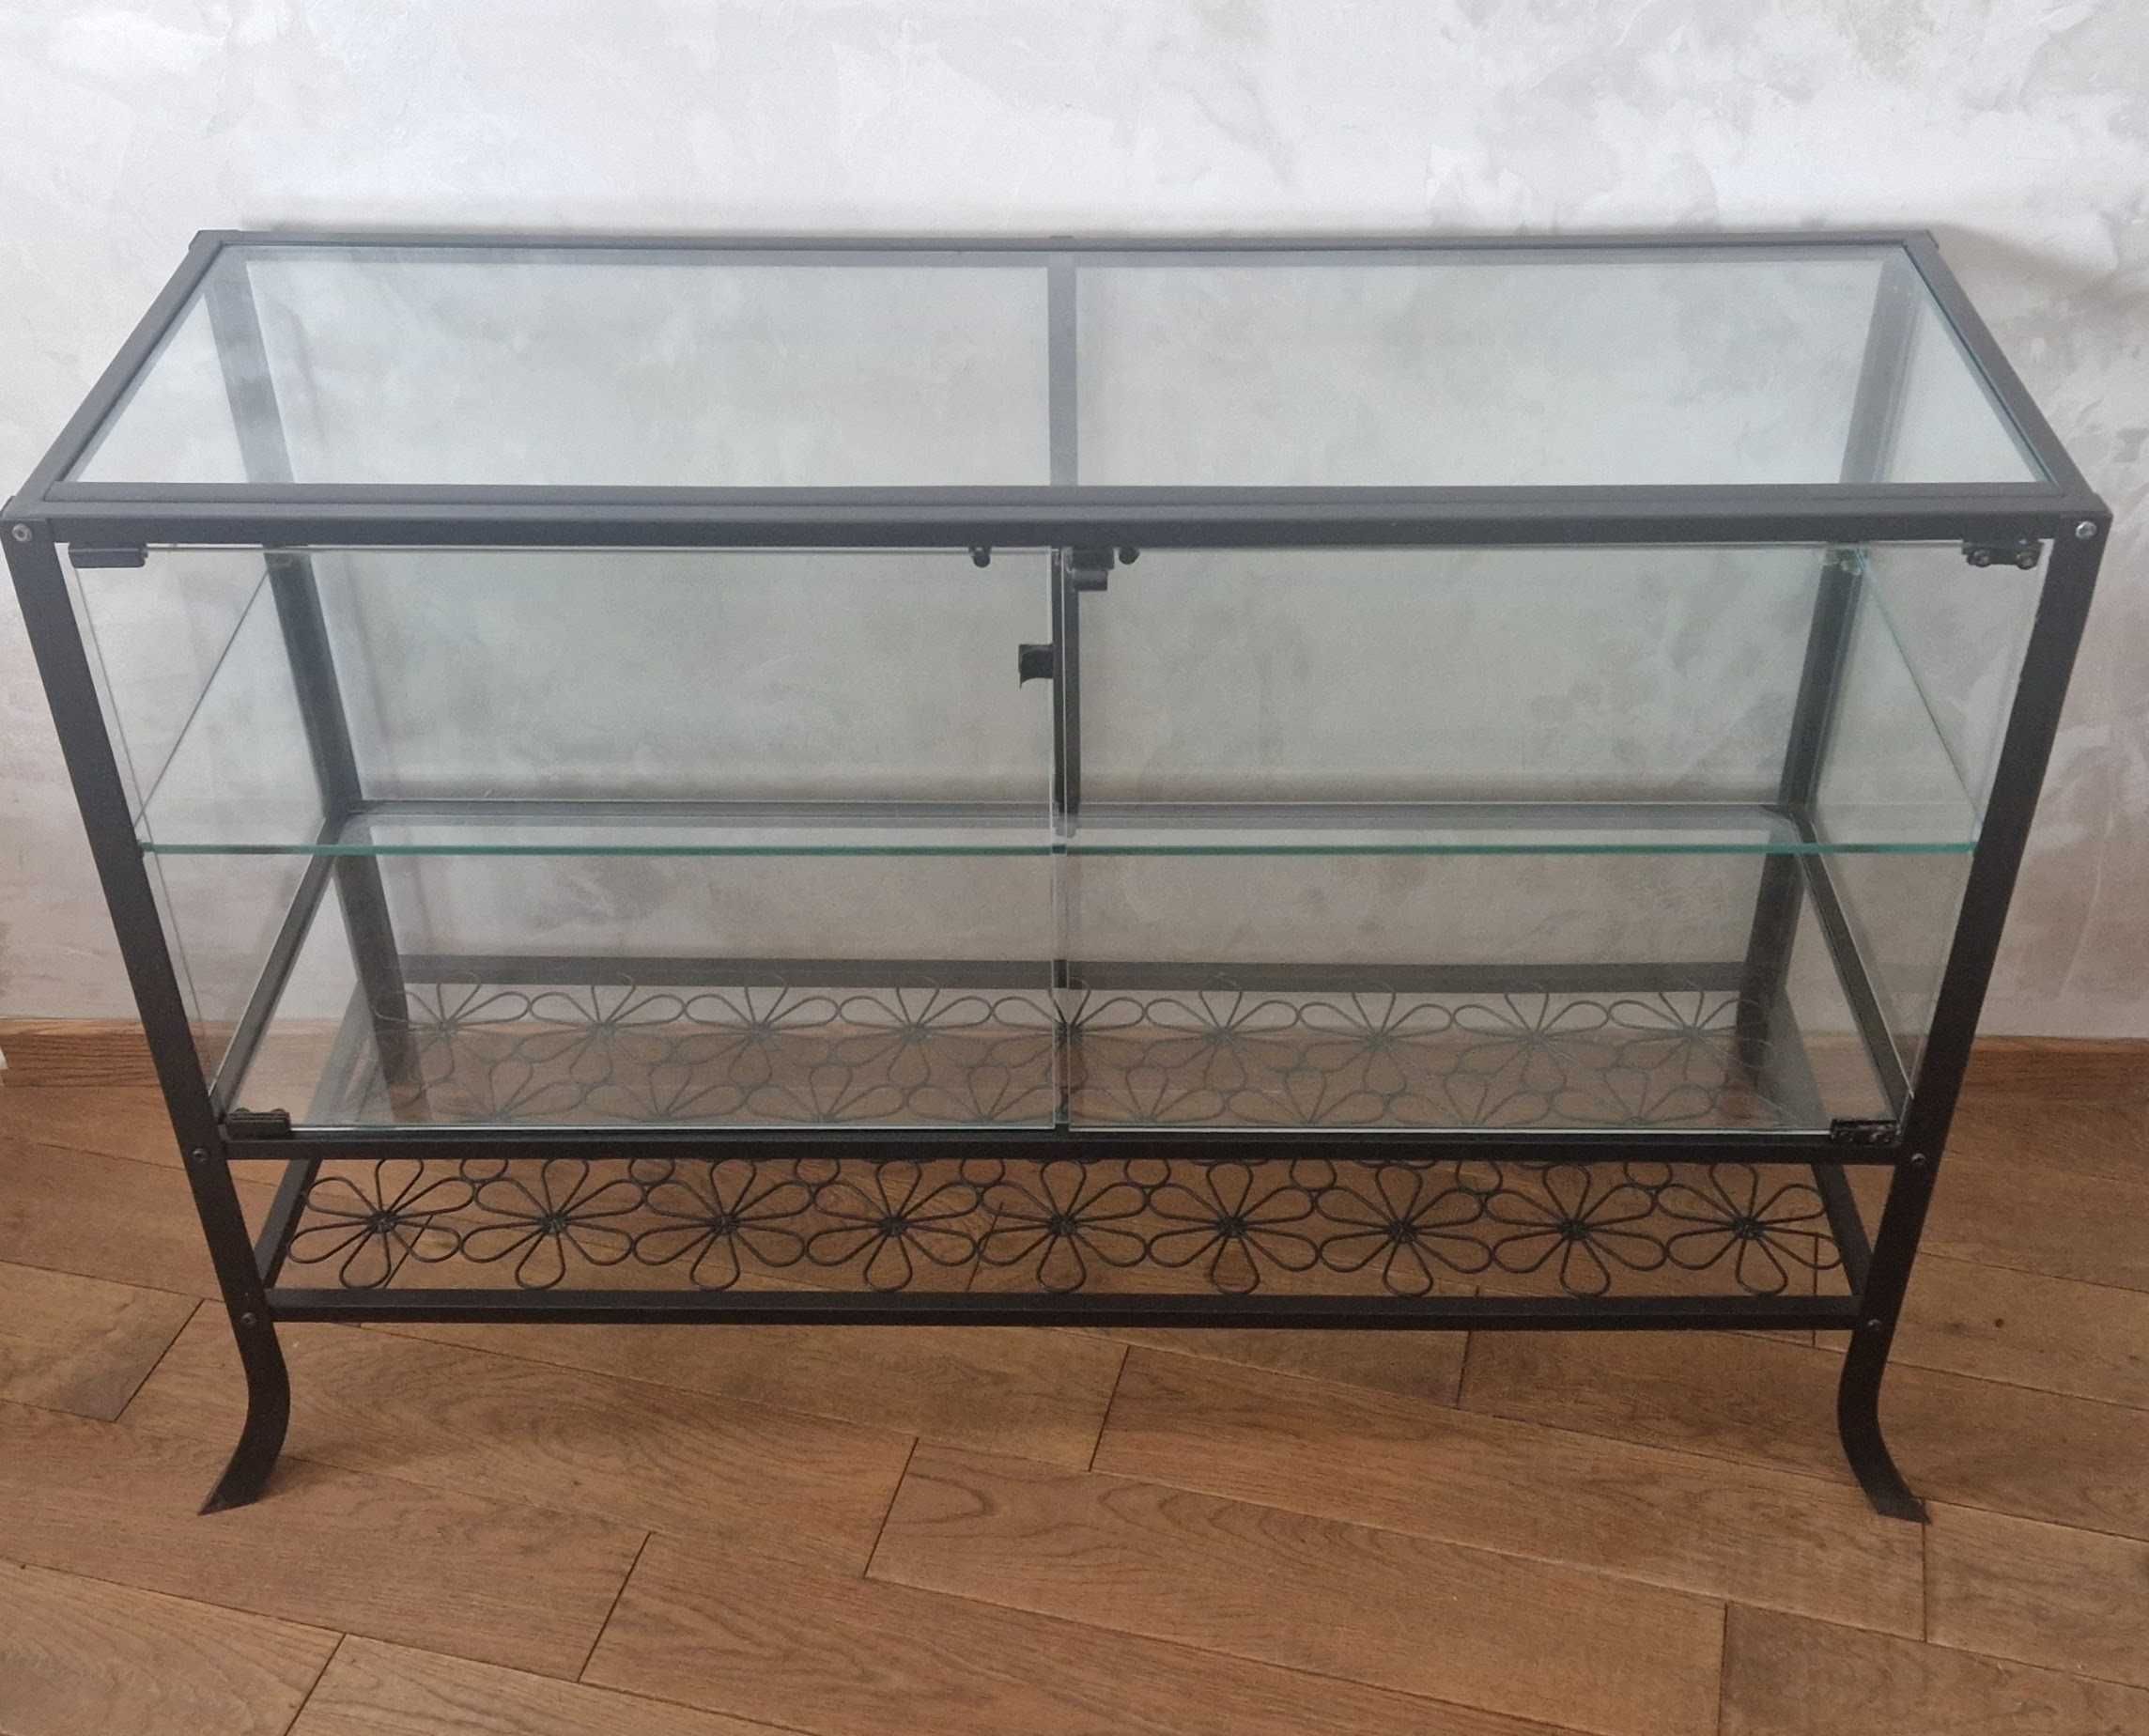 Witryna metalowa szklana IKEA Klingsbo komoda ekspozytor